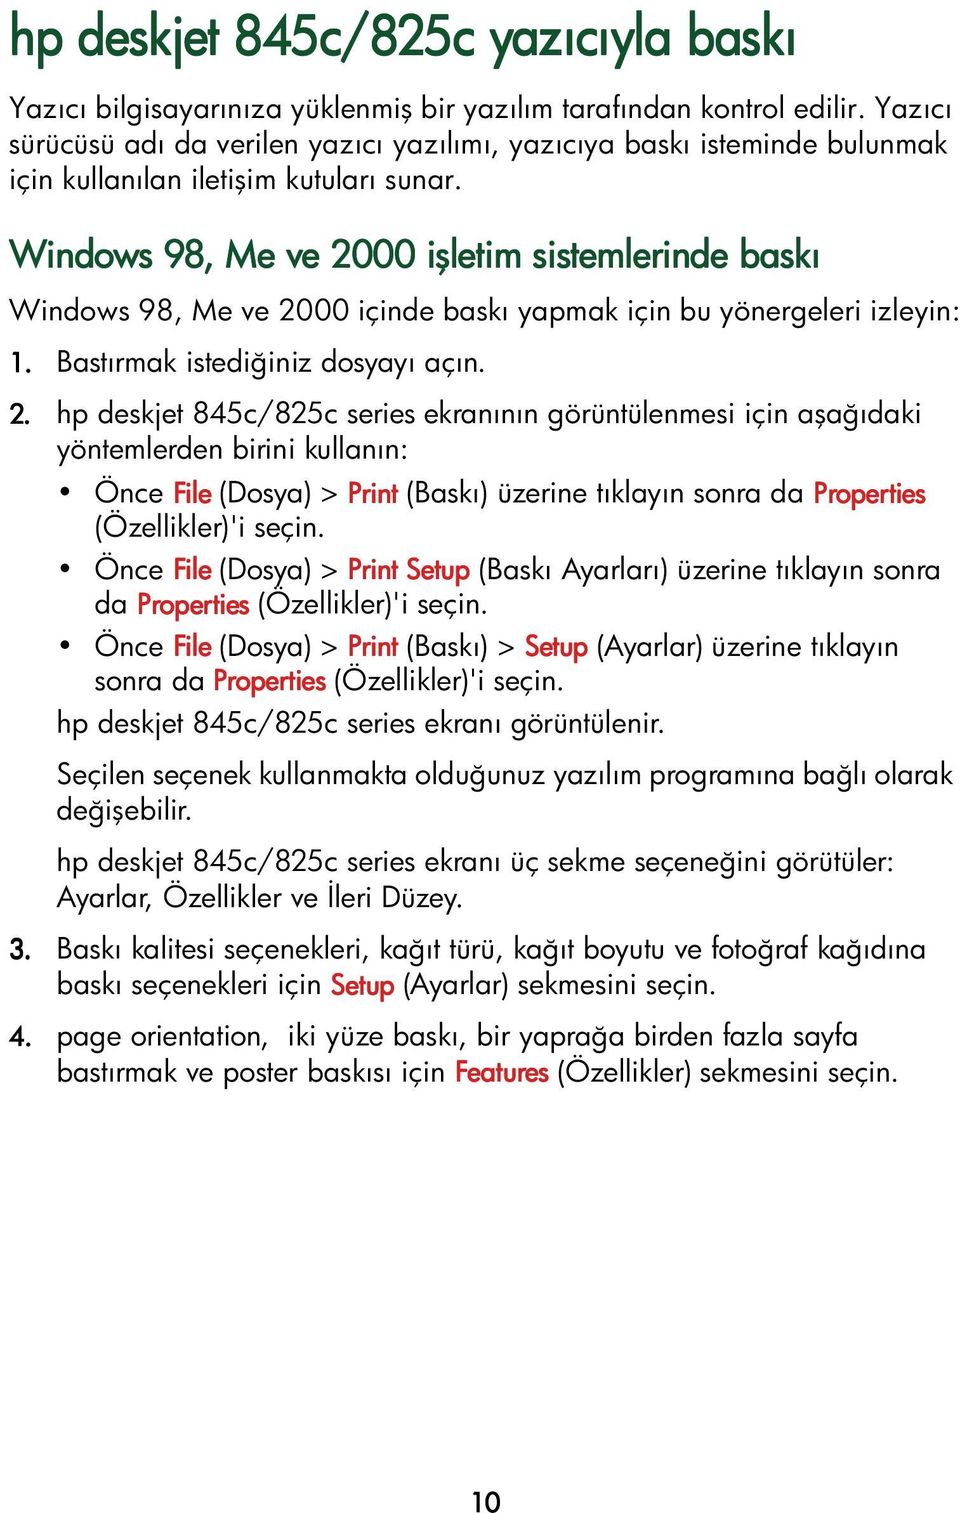 Windows 98, Me ve 20